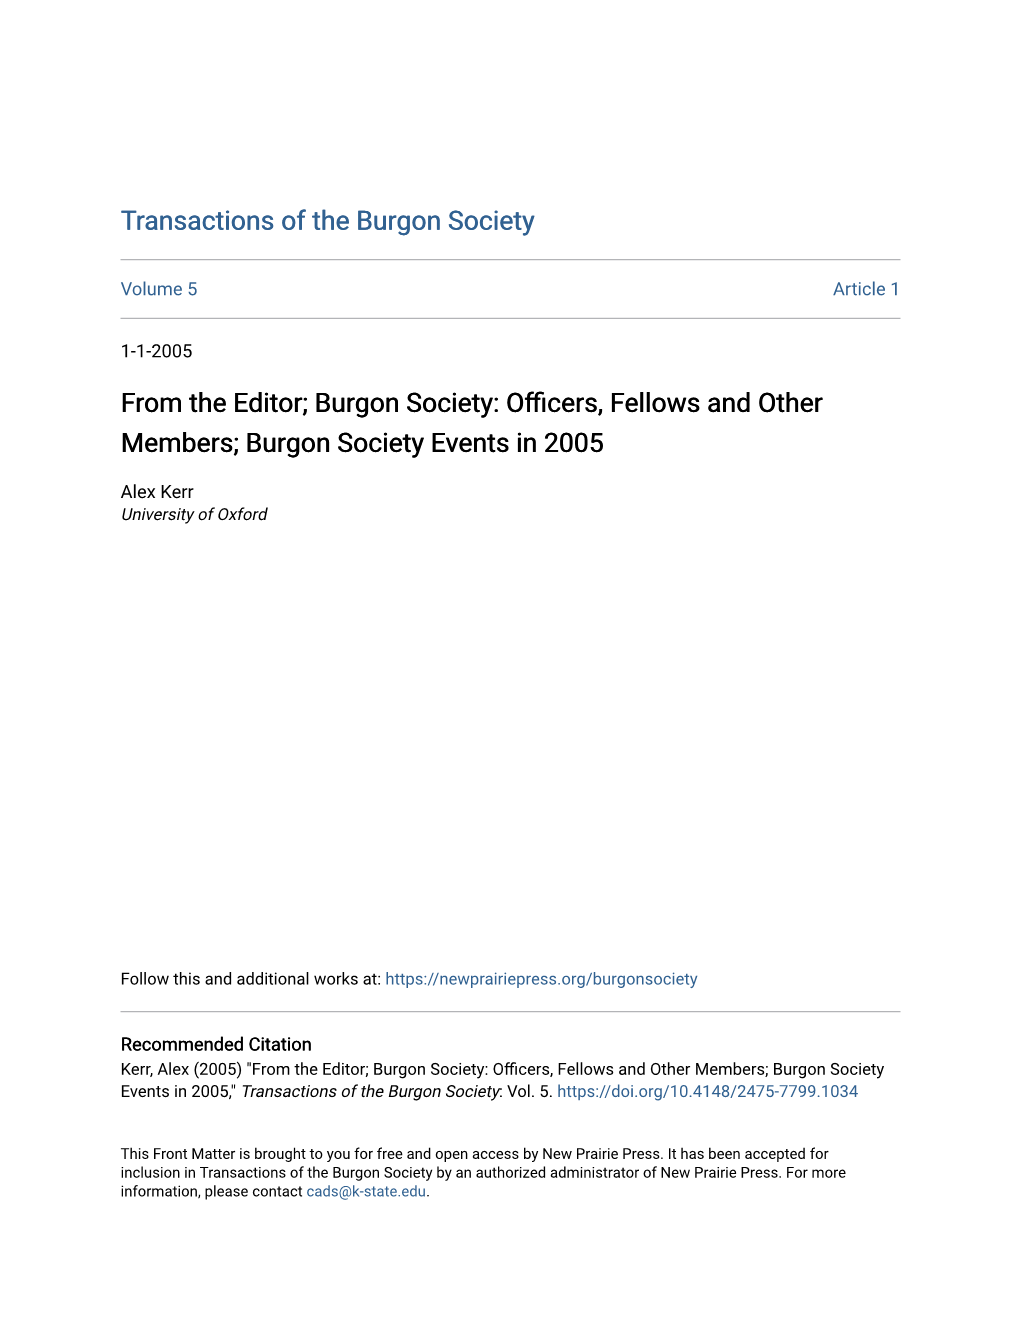 Burgon Society